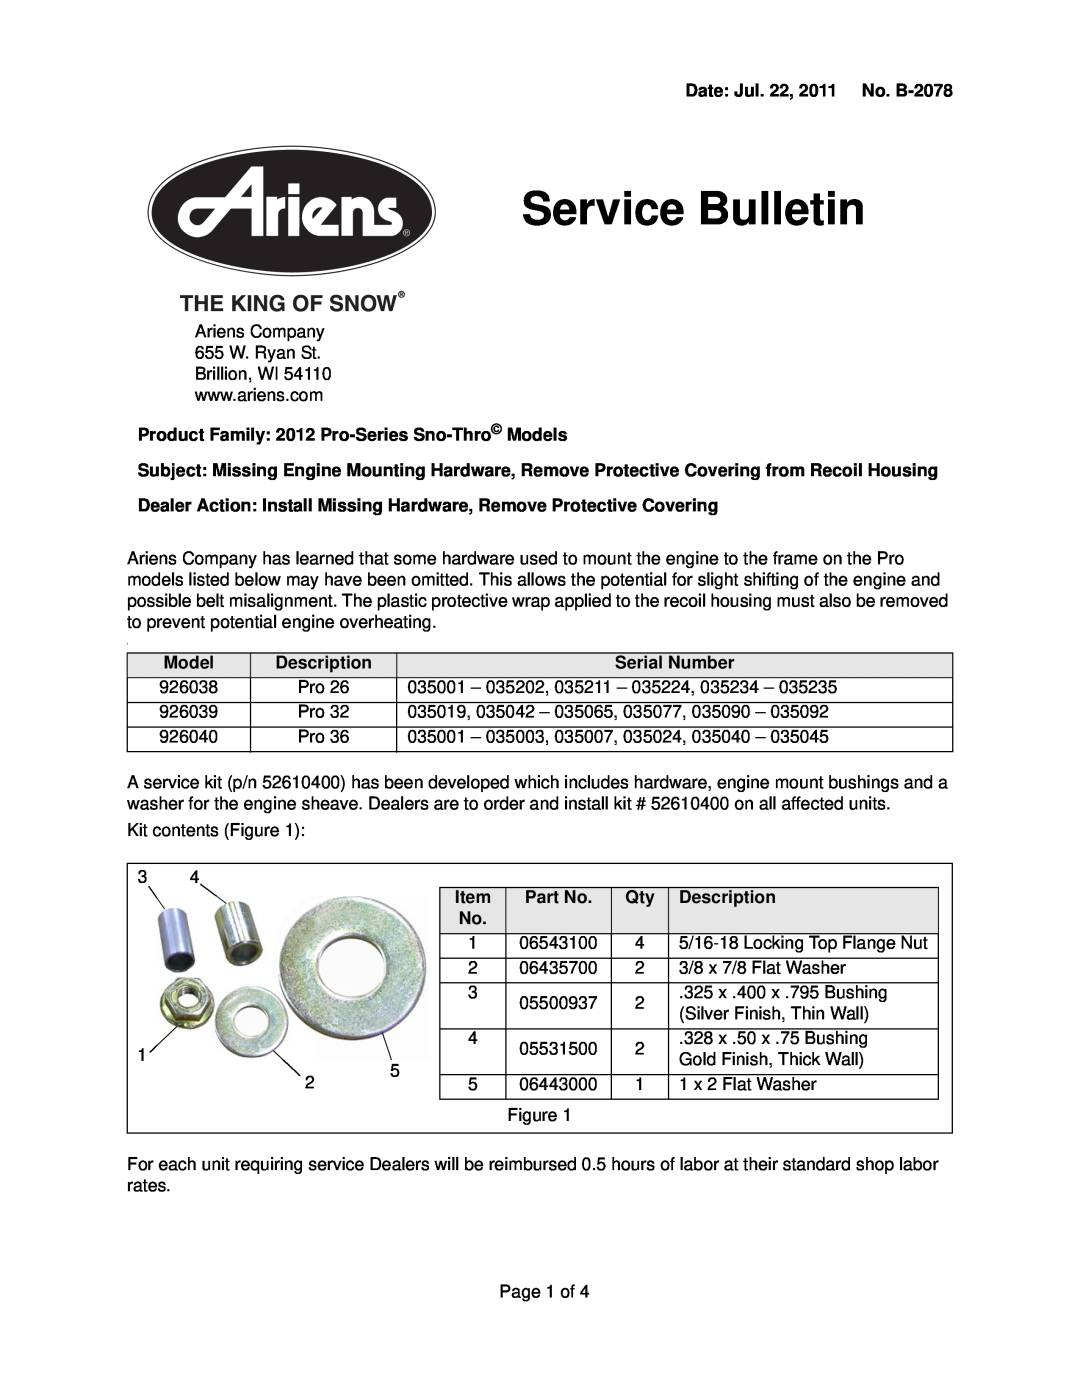 Ariens 926040, 926039, 926038 manual Service Bulletin 